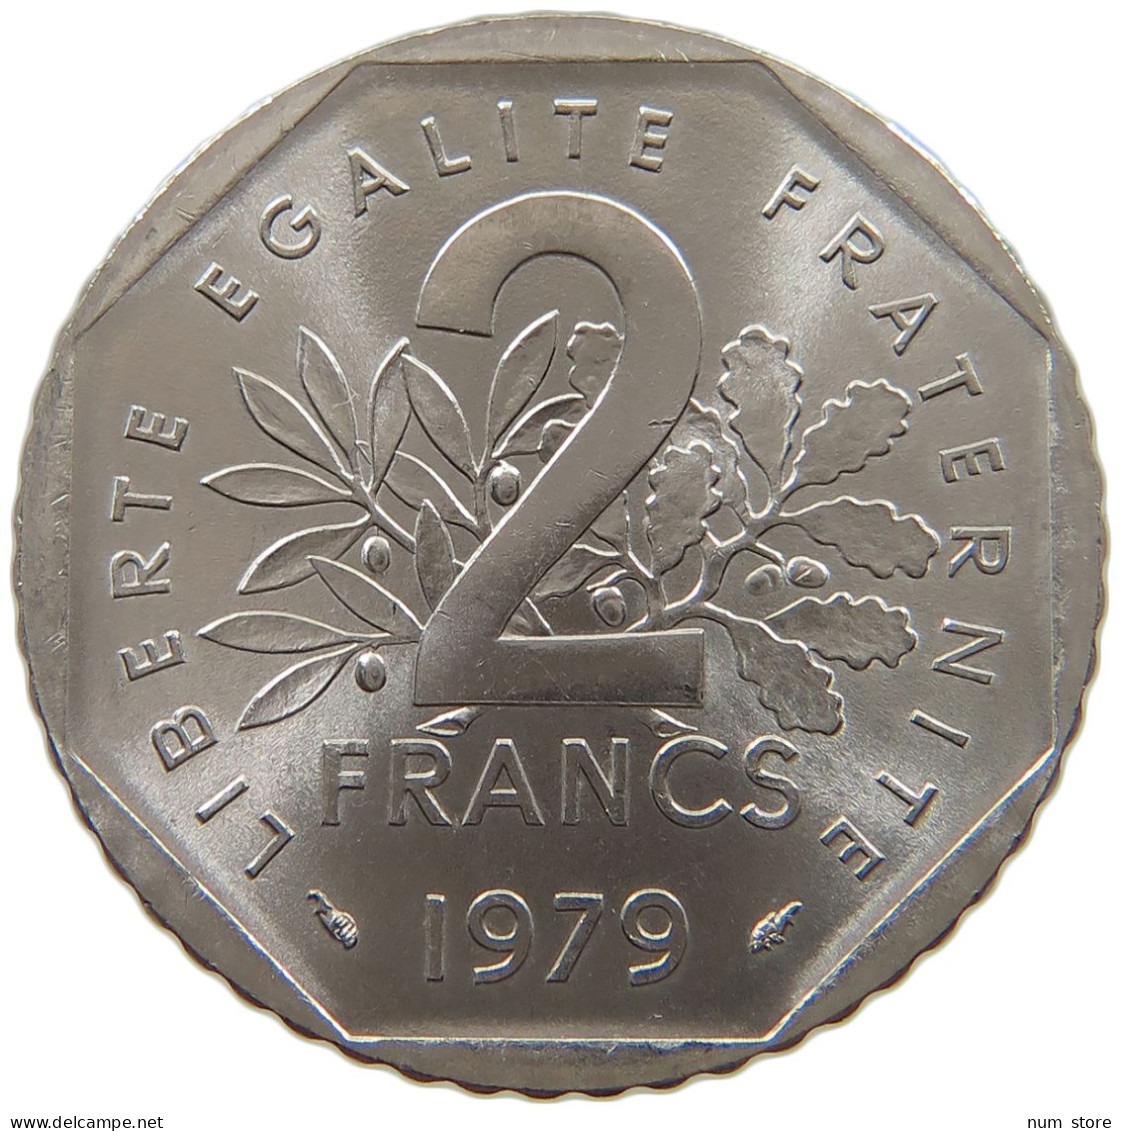 FRANCE 2 FRANCS 1979 TOP #a079 0237 - 2 Francs